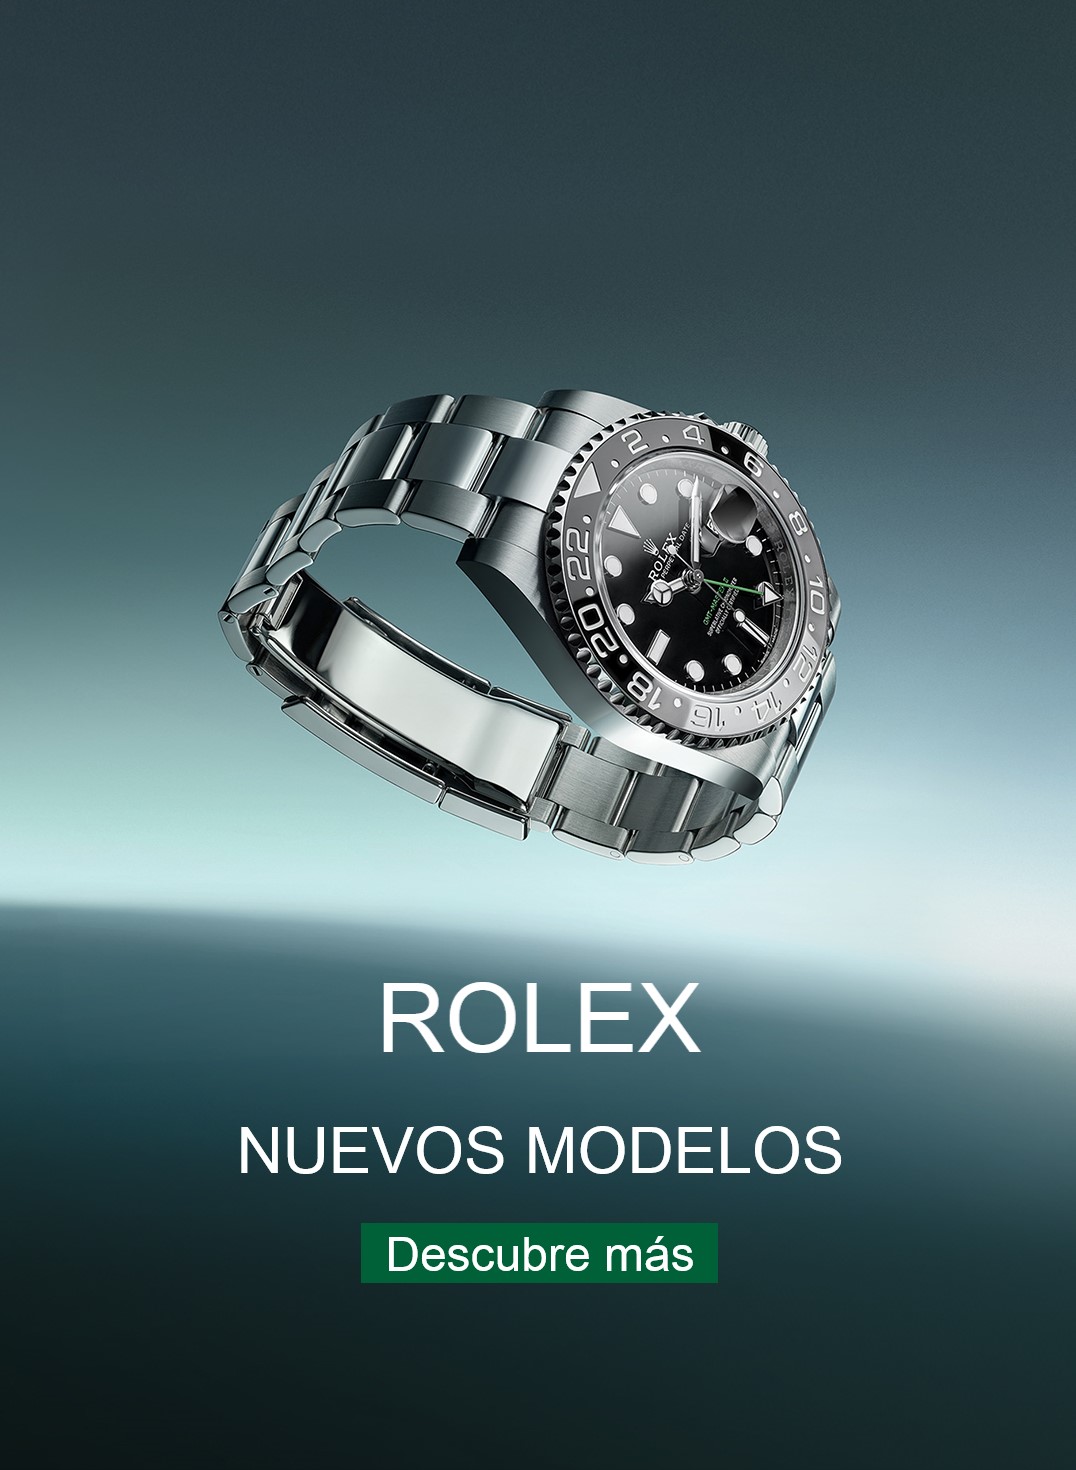 Reloj Rolex sobre el oceano